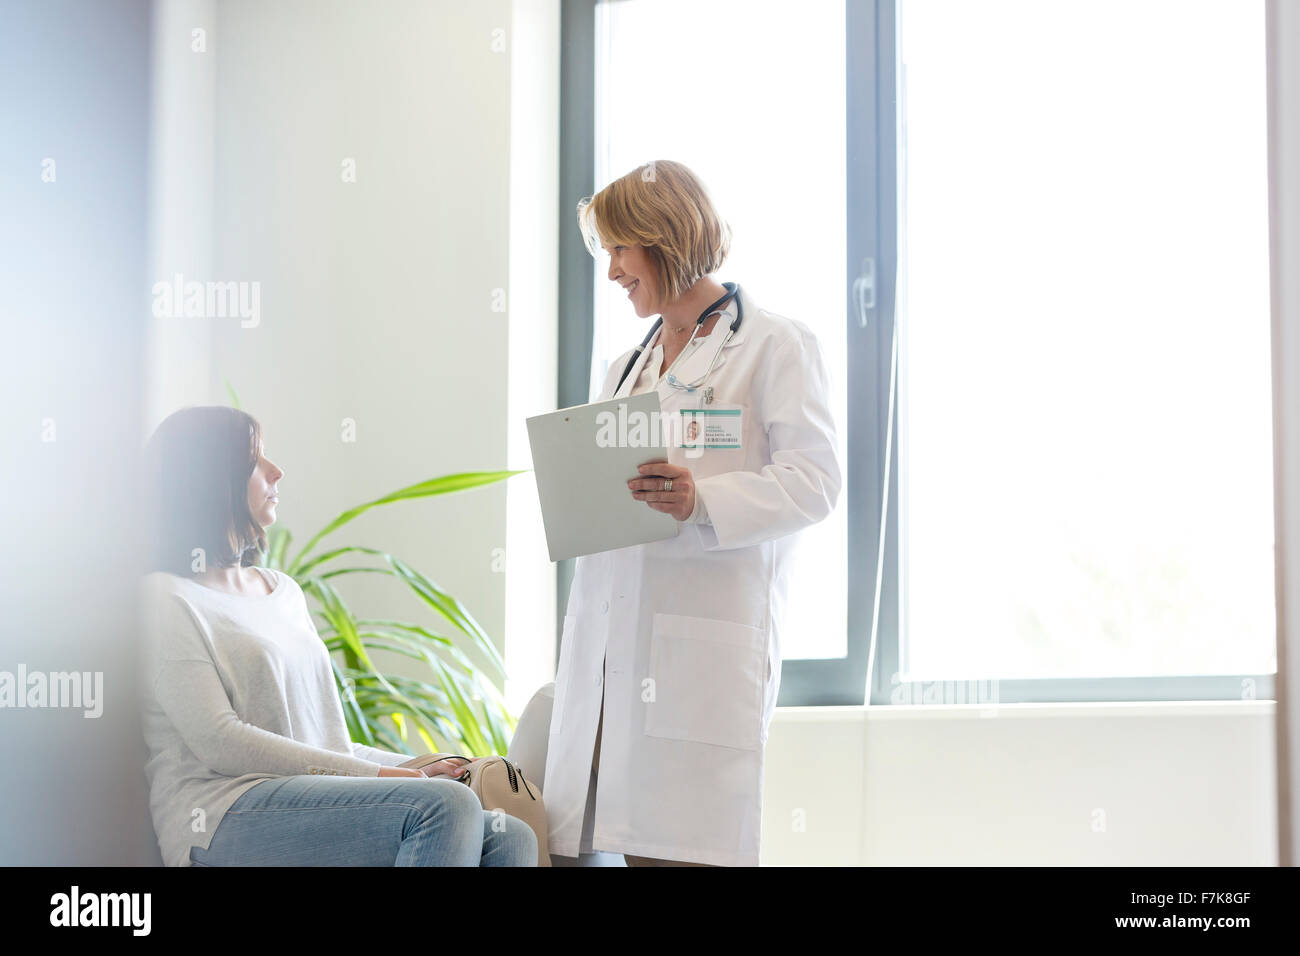 Dossier médical avec médecin parler au patient en salle d'attente Banque D'Images